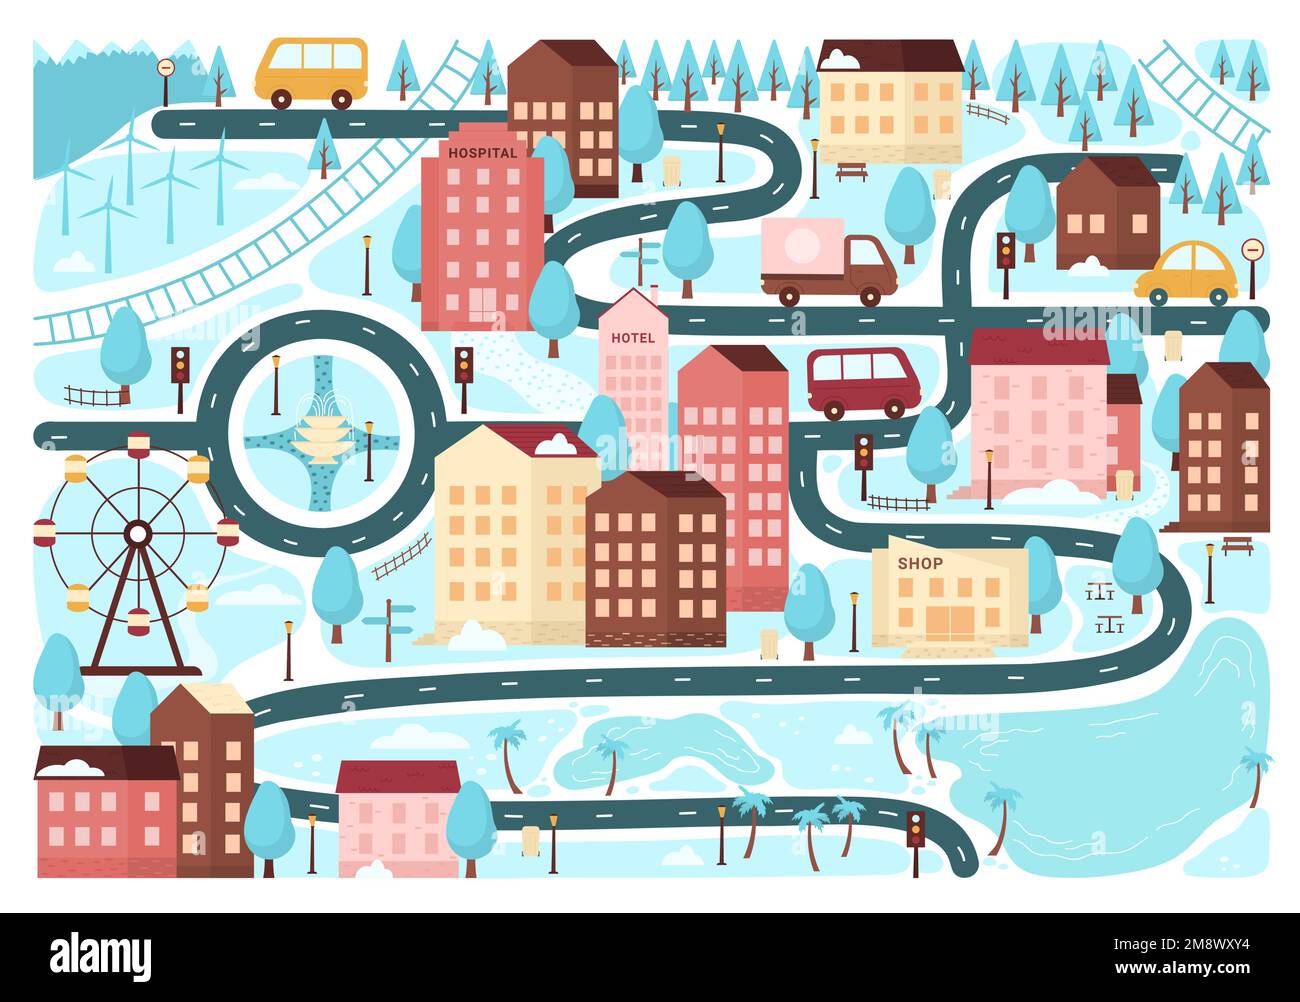 Mapa de la ciudad de invierno ilustración vectorial. Dibujos animados de Navidad lindas casas de ciudad y carretera con nieve para niños juego de mesa, papel pintado de Navidad con pequeños edificios y árboles, coches en el patrón de calles, vista superior Ilustración del Vector